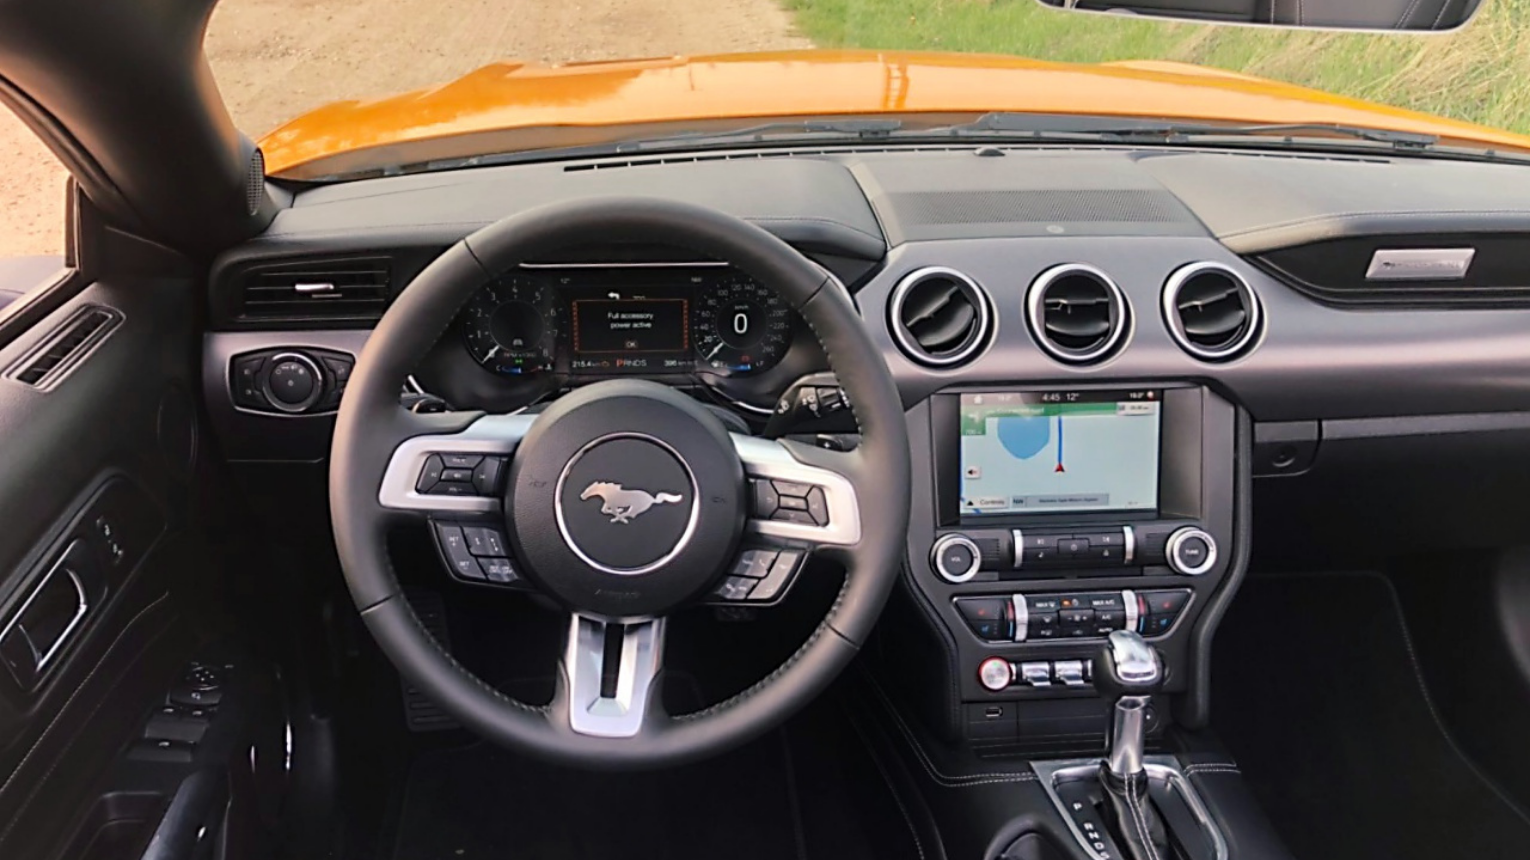 Ford Mustang 5.0 GT V8 CONVERTIBLE kölcsönzés 3